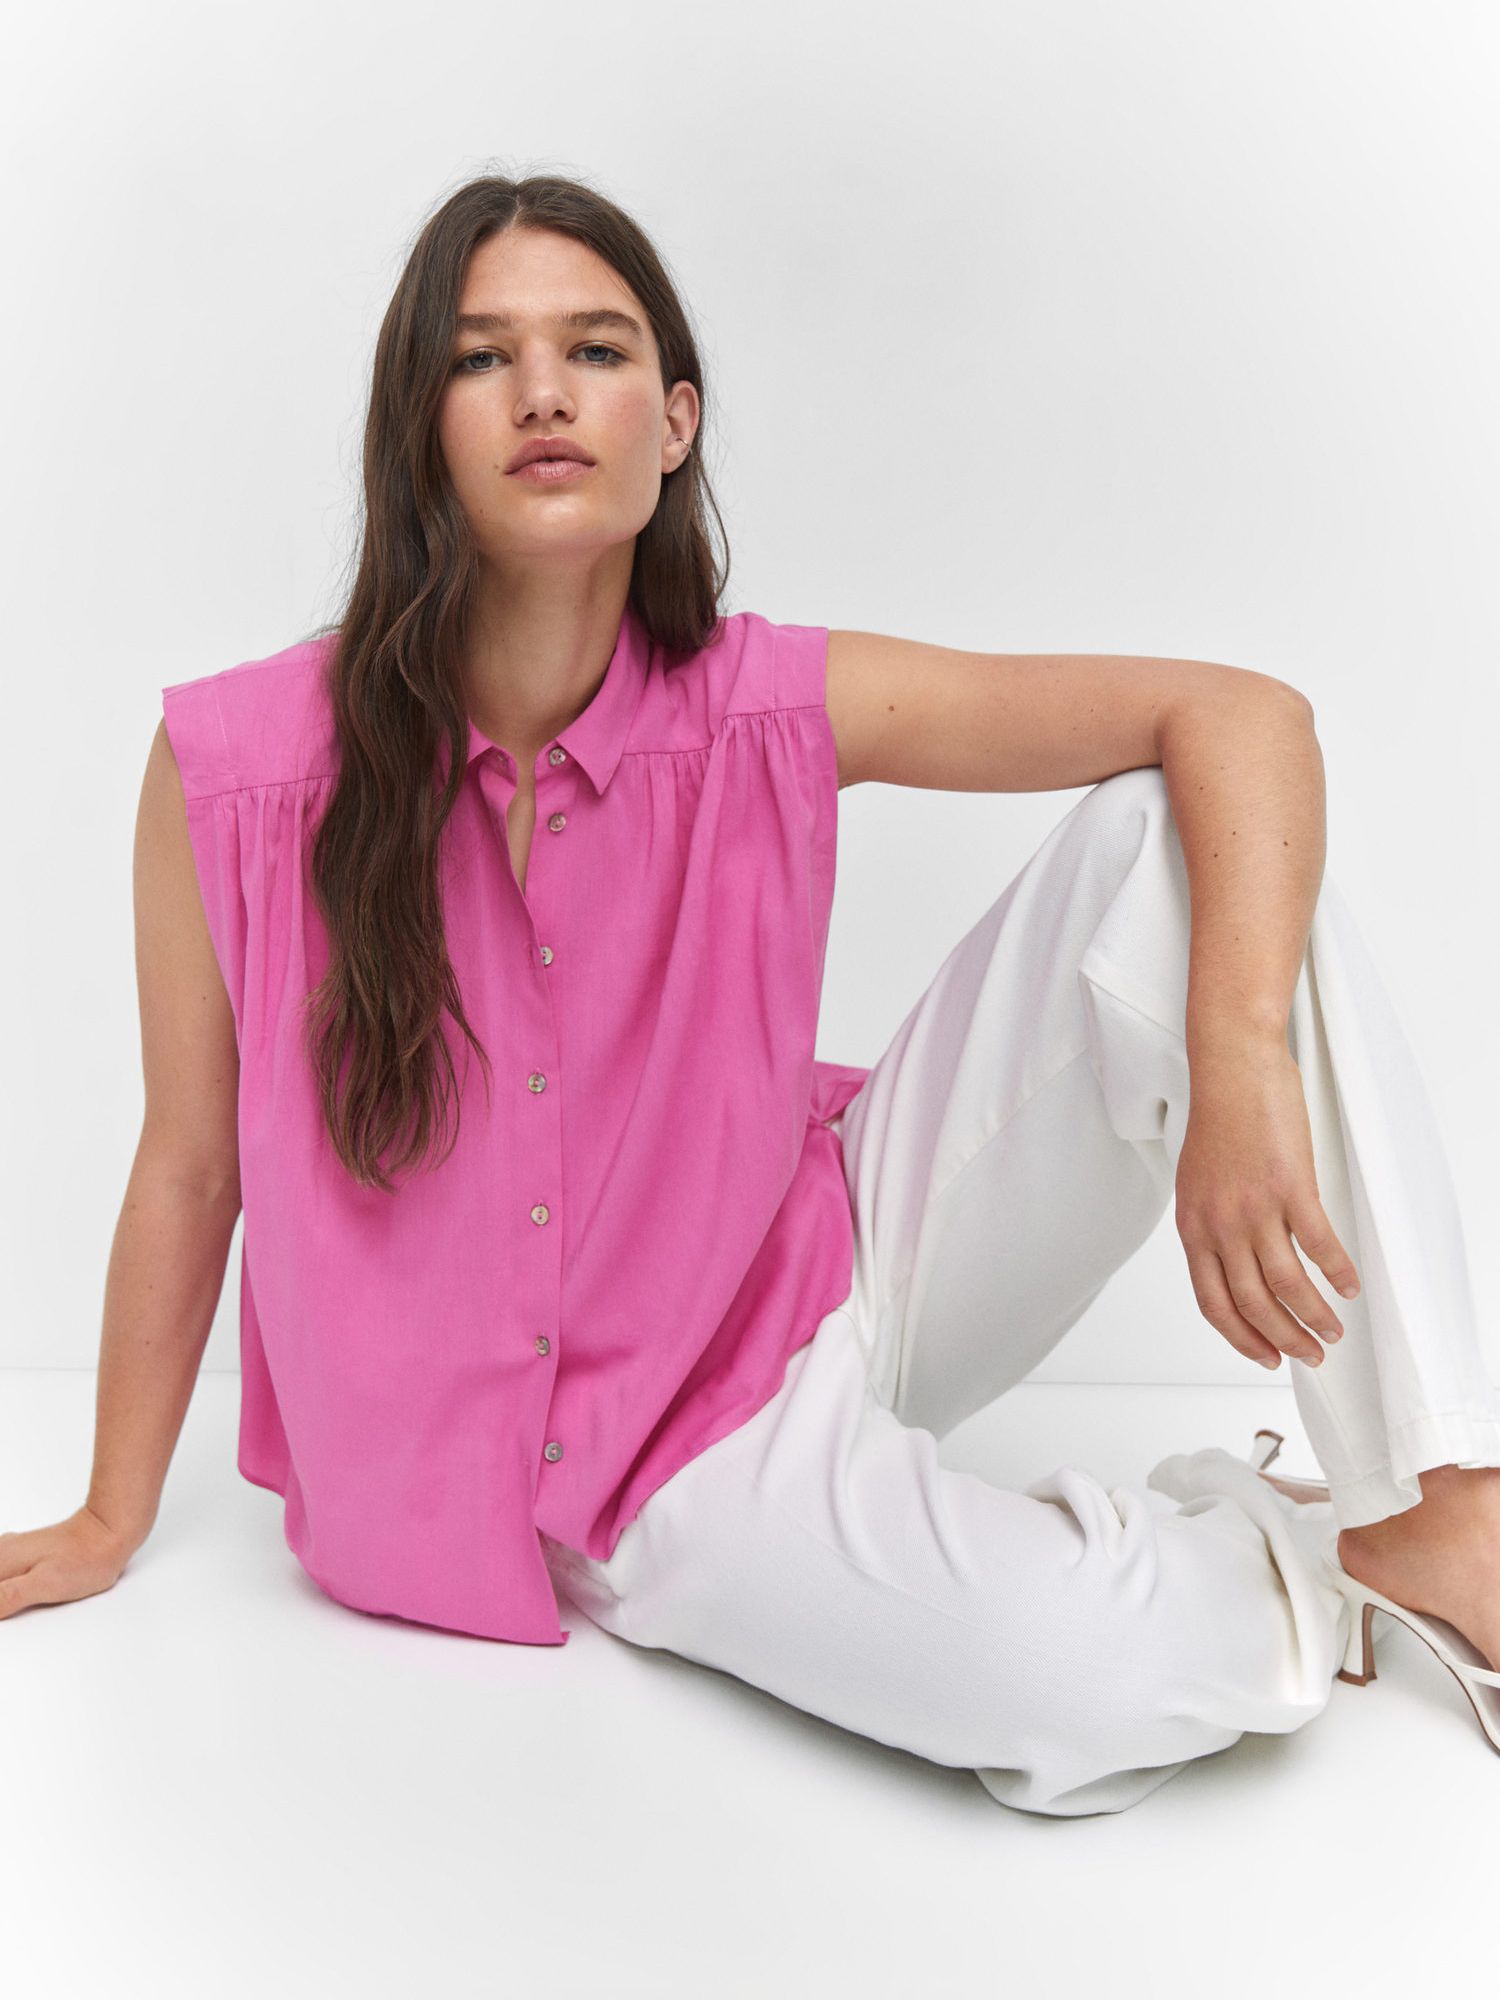 Mango Morgana Relaxed Sleeveless Shirt, Pink at John Lewis & Partners